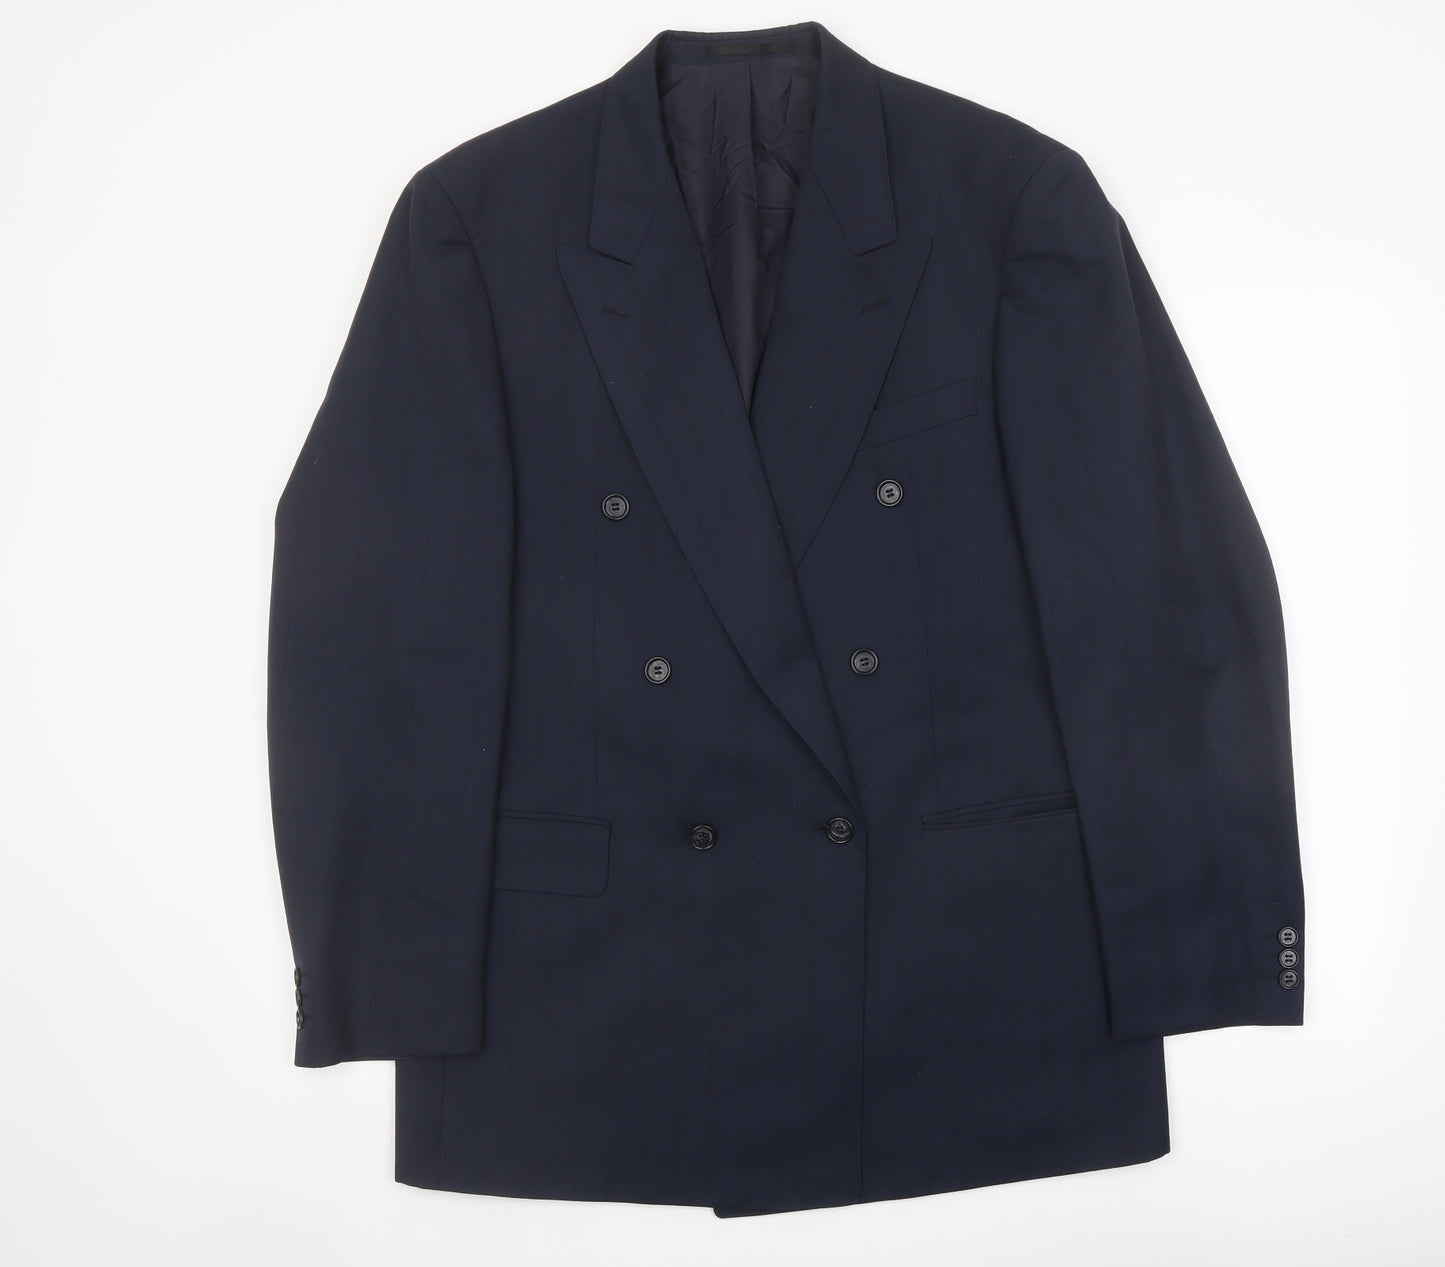 Odermark Mens Blue Polyester Jacket Suit Jacket Size 44 Regular